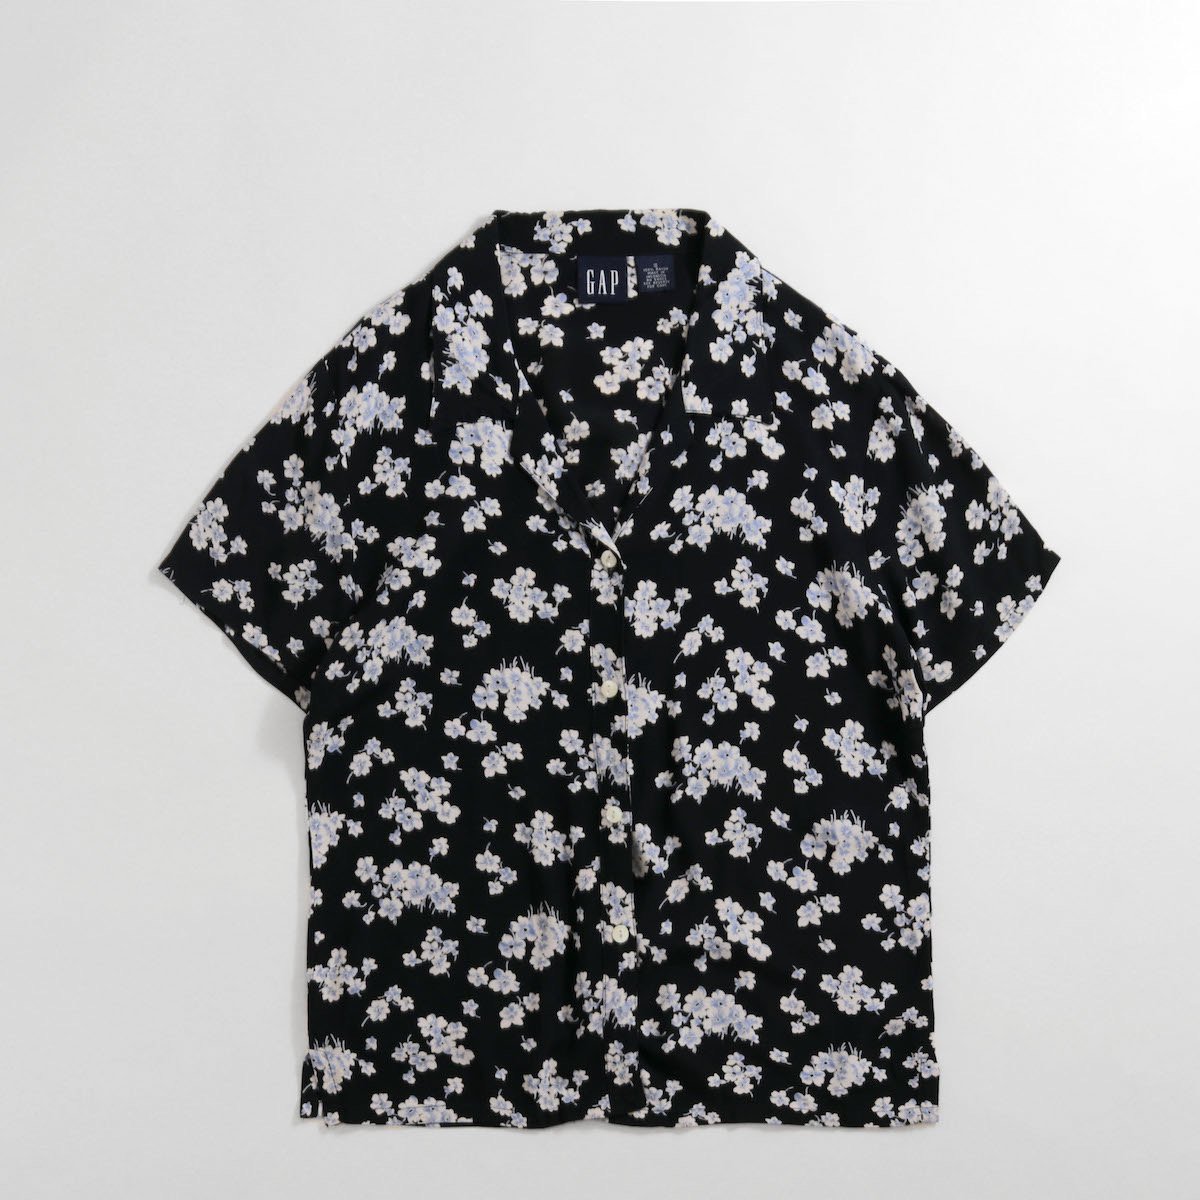 レディース] 1990s オールドGAP 花柄オープンカラーシャツ 半袖 ブラック